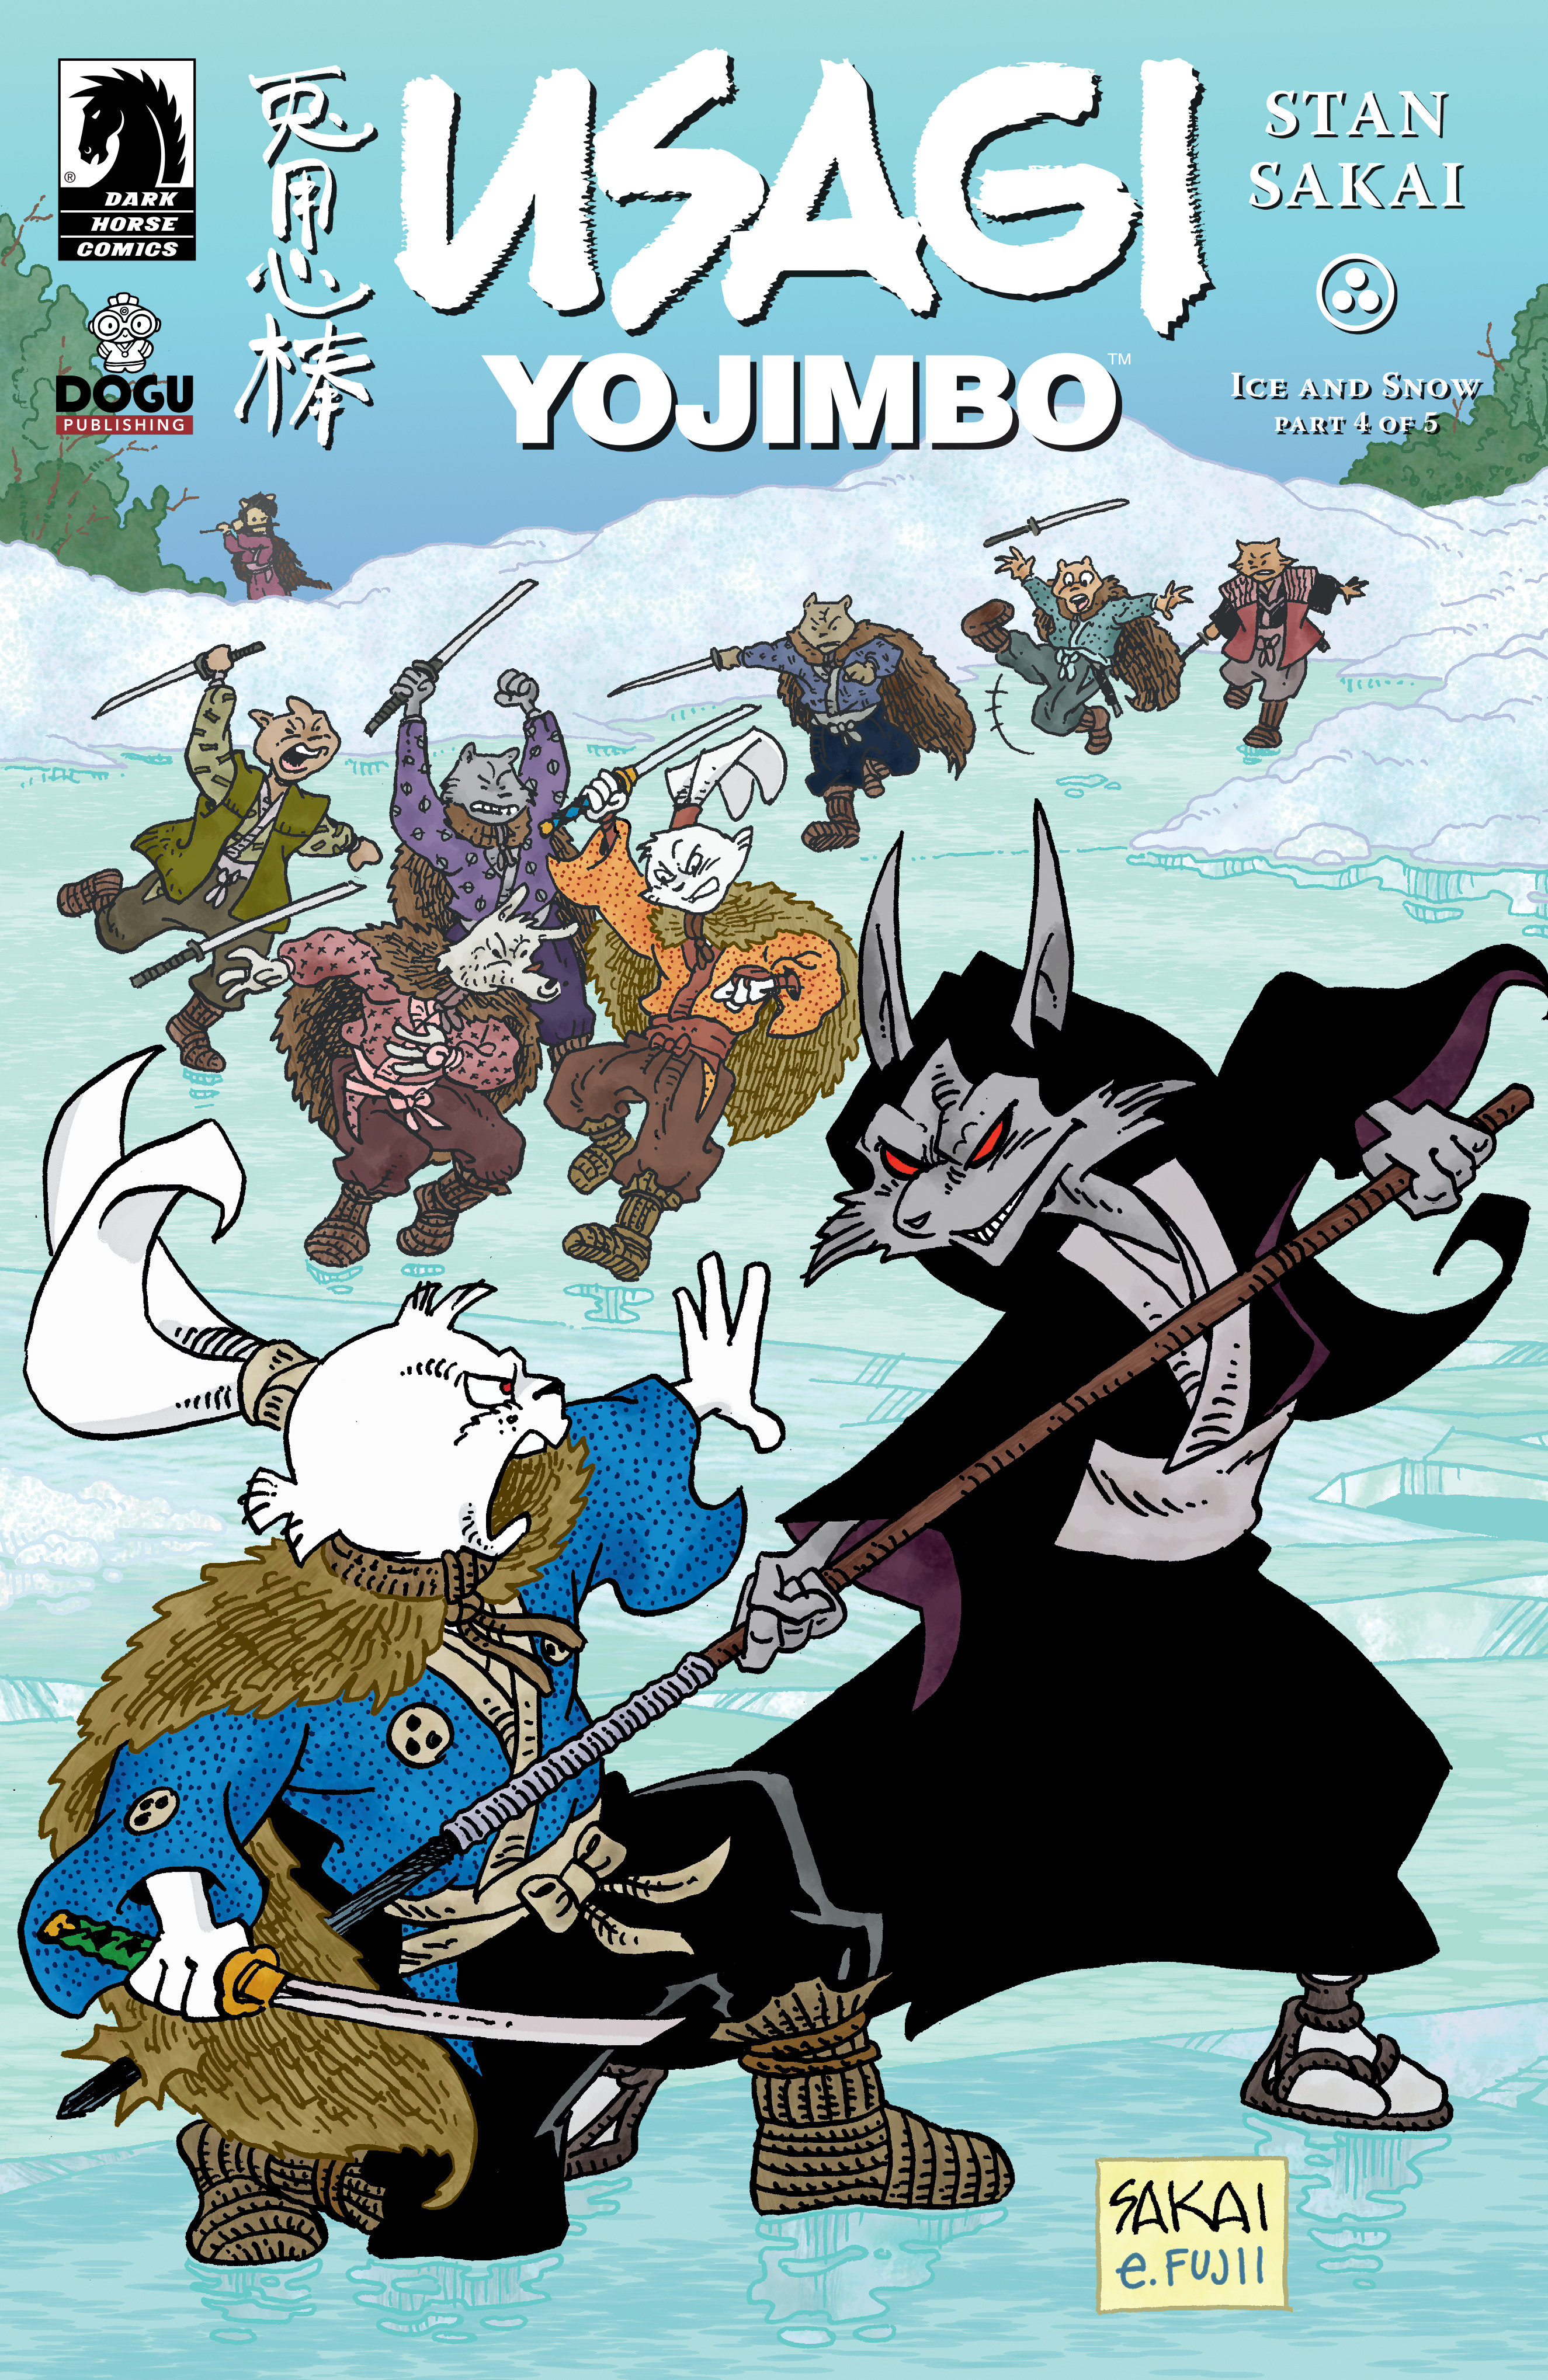 Usagi Yojimbo: Ice & Snow #4 Cover A (Stan Sakai)